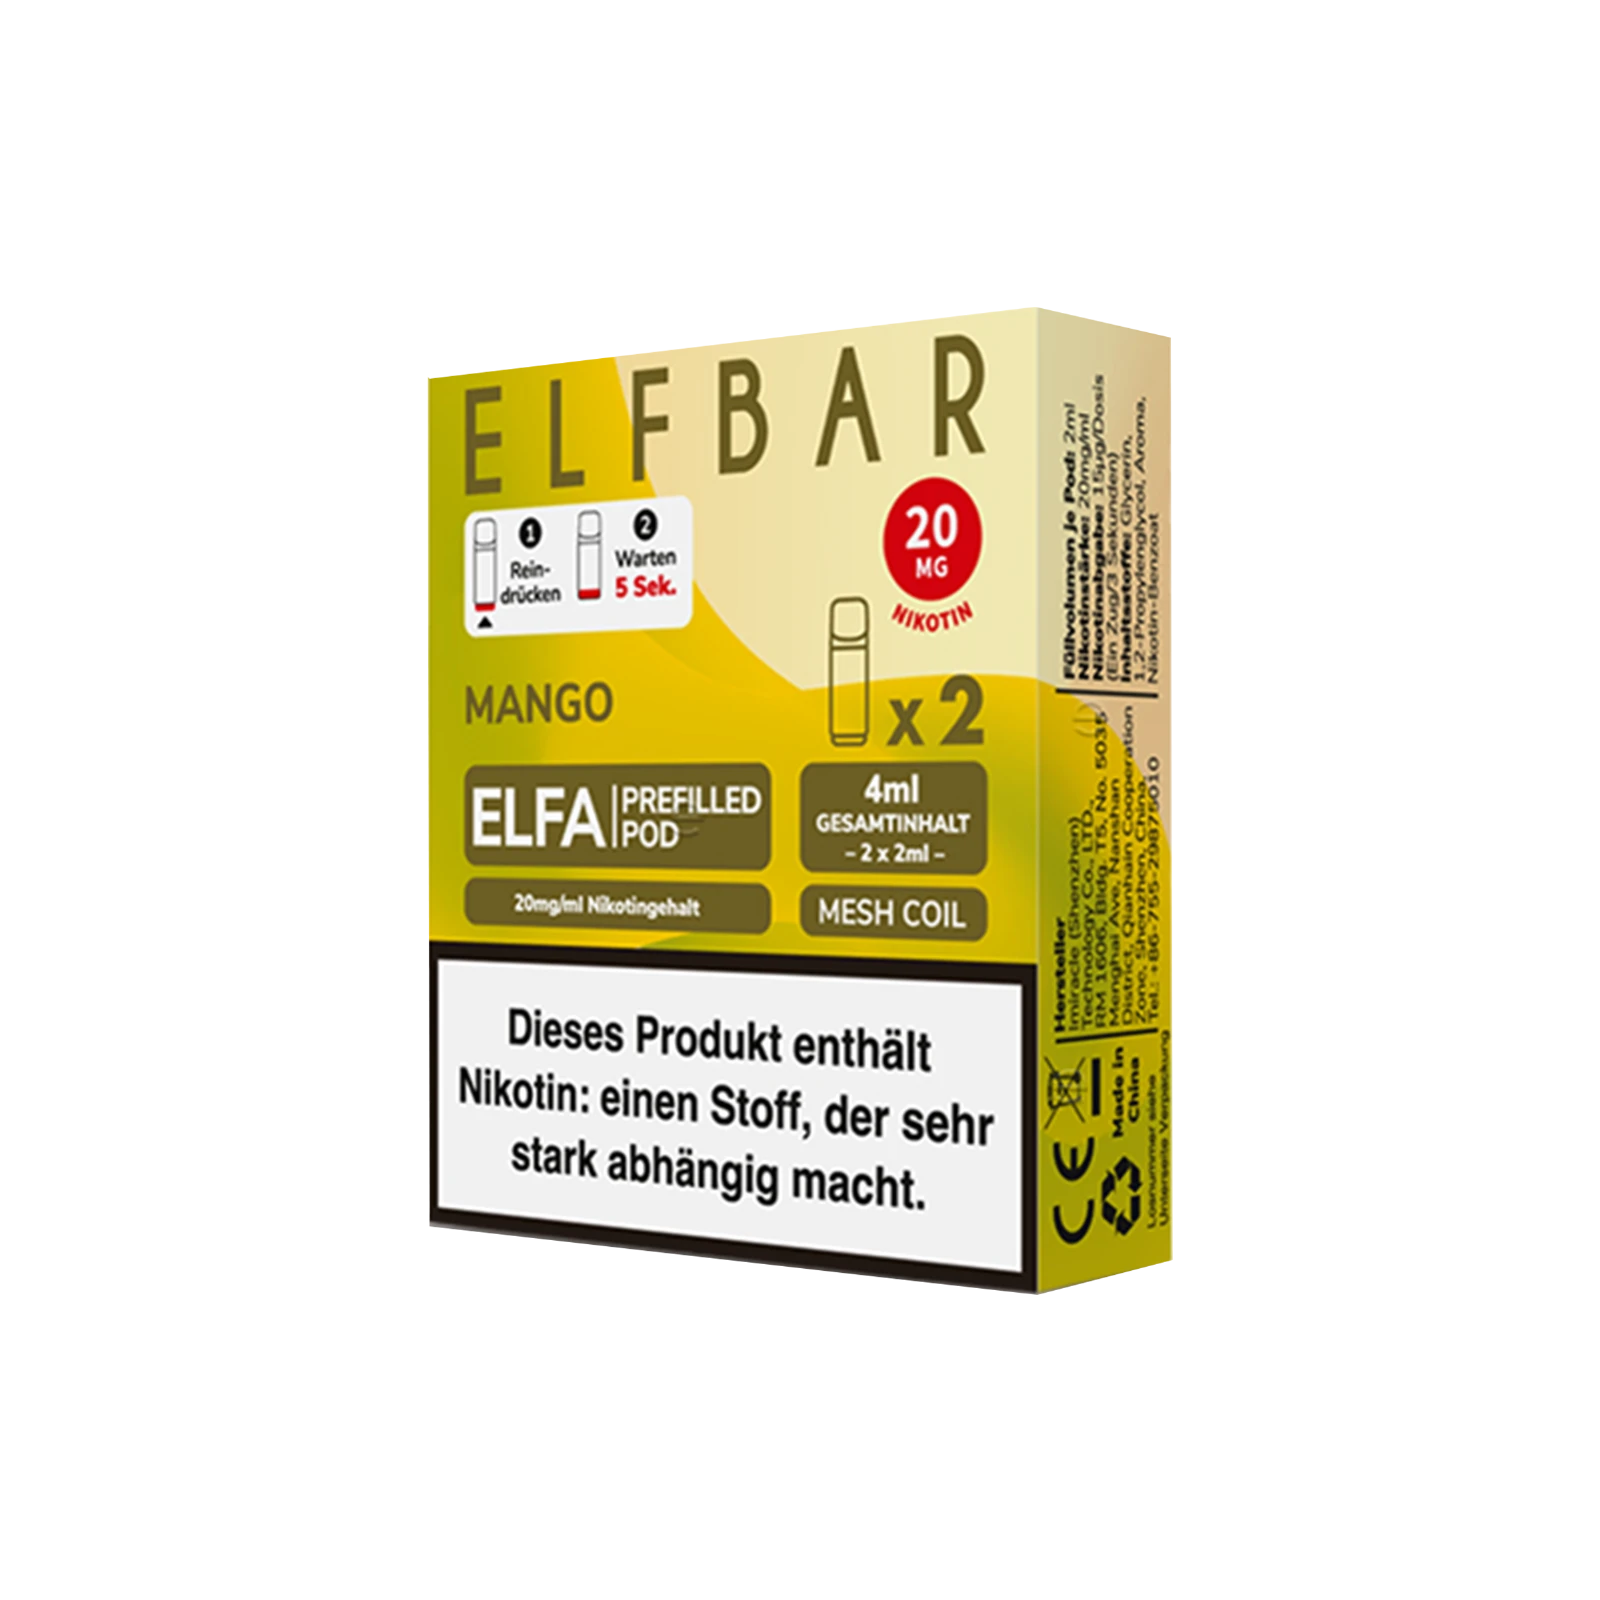 Elf Bar ELFA CP Prefilled Pod Mango | Neue Liquid Sorten1